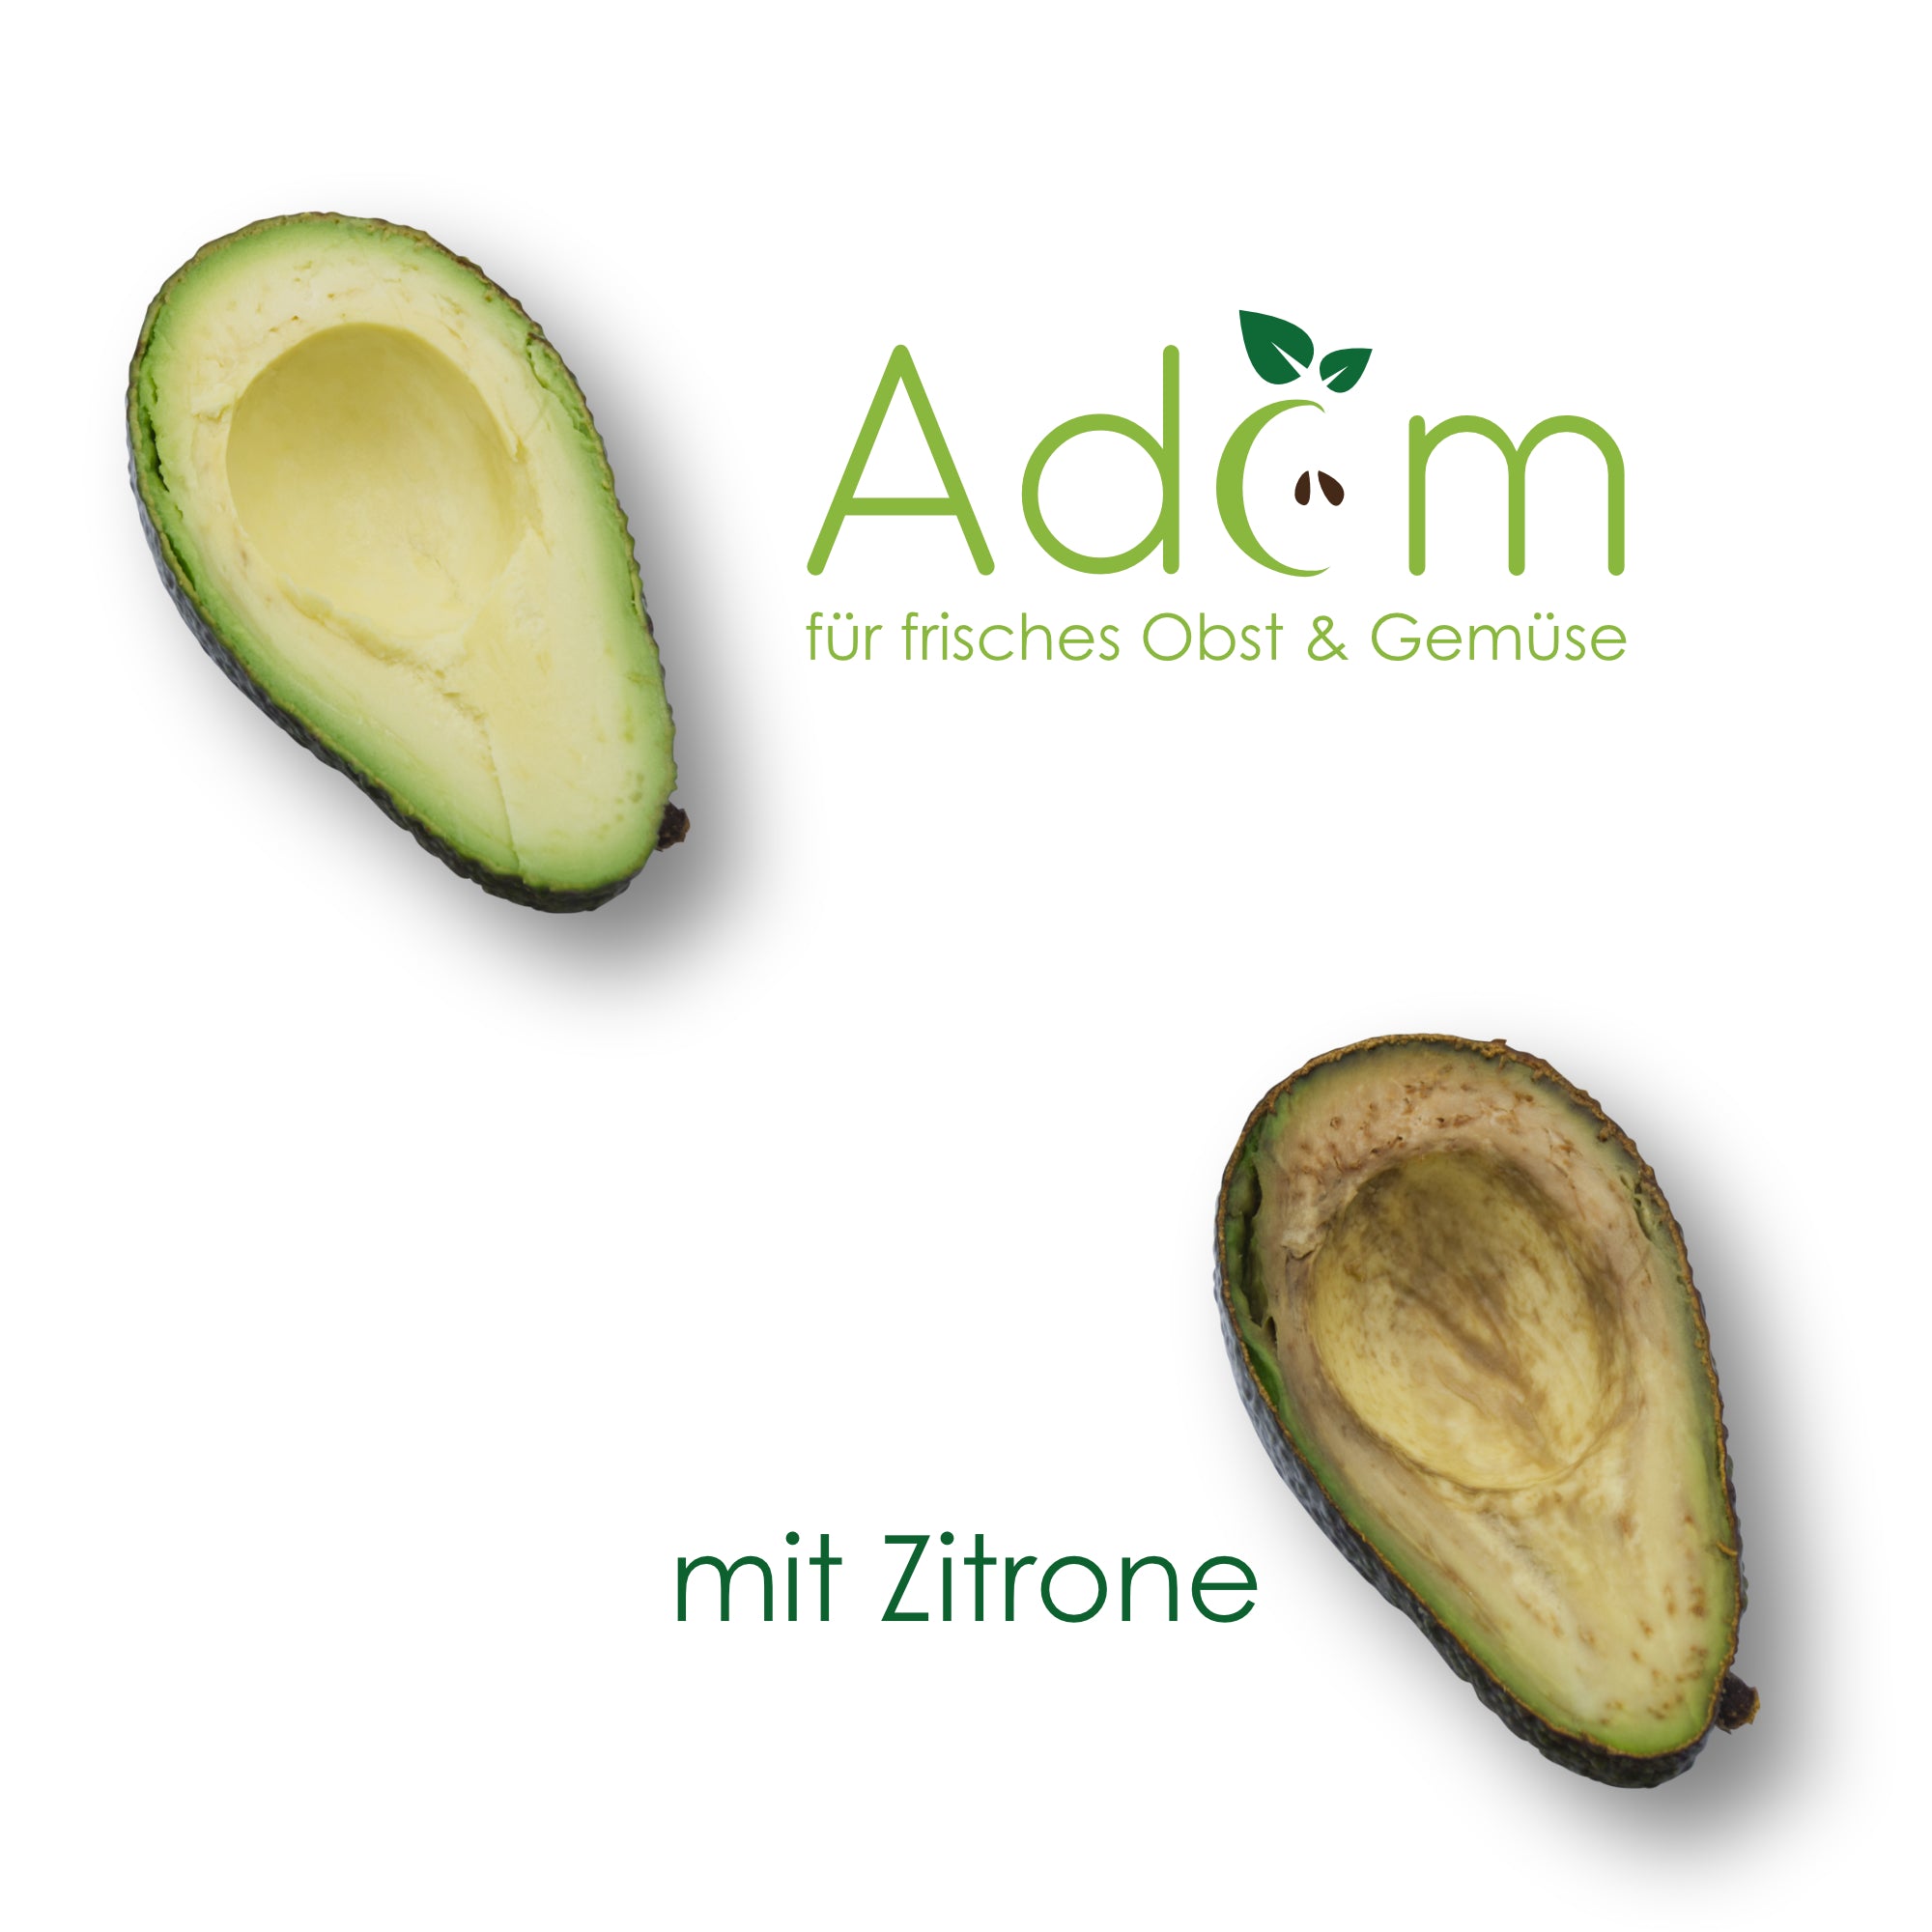 Adam® für Avocado, Guacamole und Salate (850g)